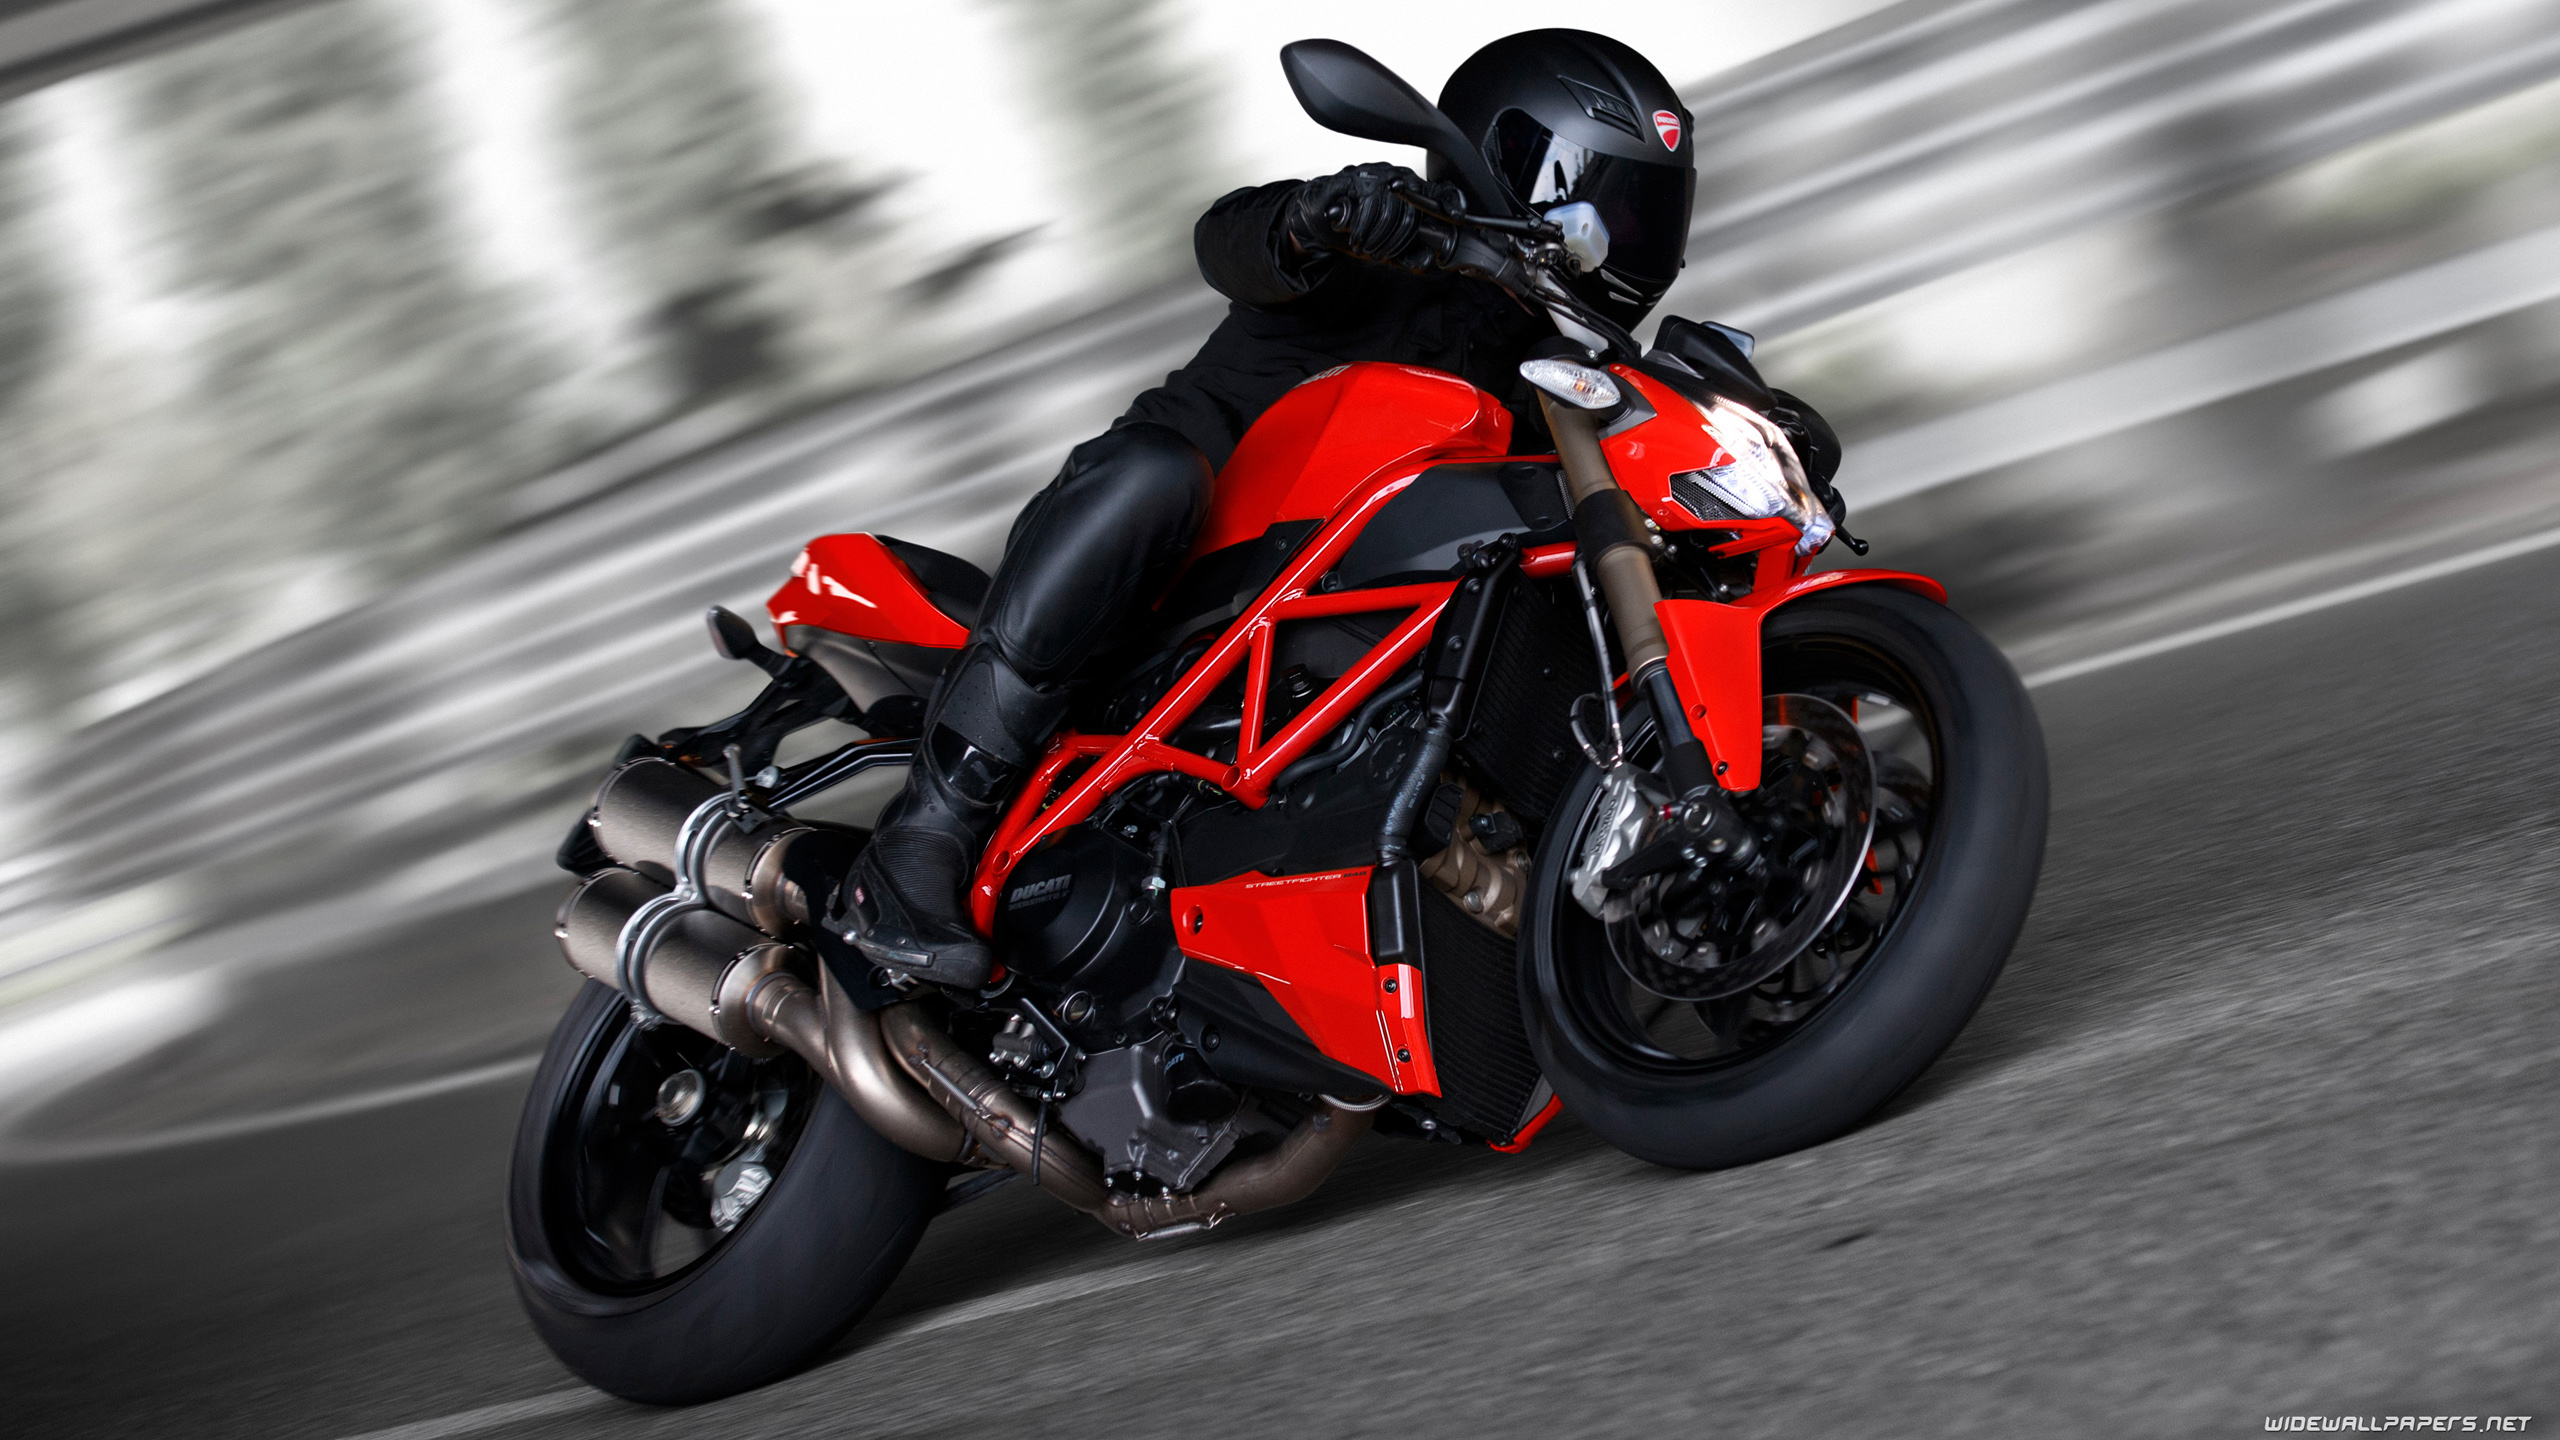 Ducati Streetfighter 848 motorcycle desktop wallpapers 4K Ultra HD